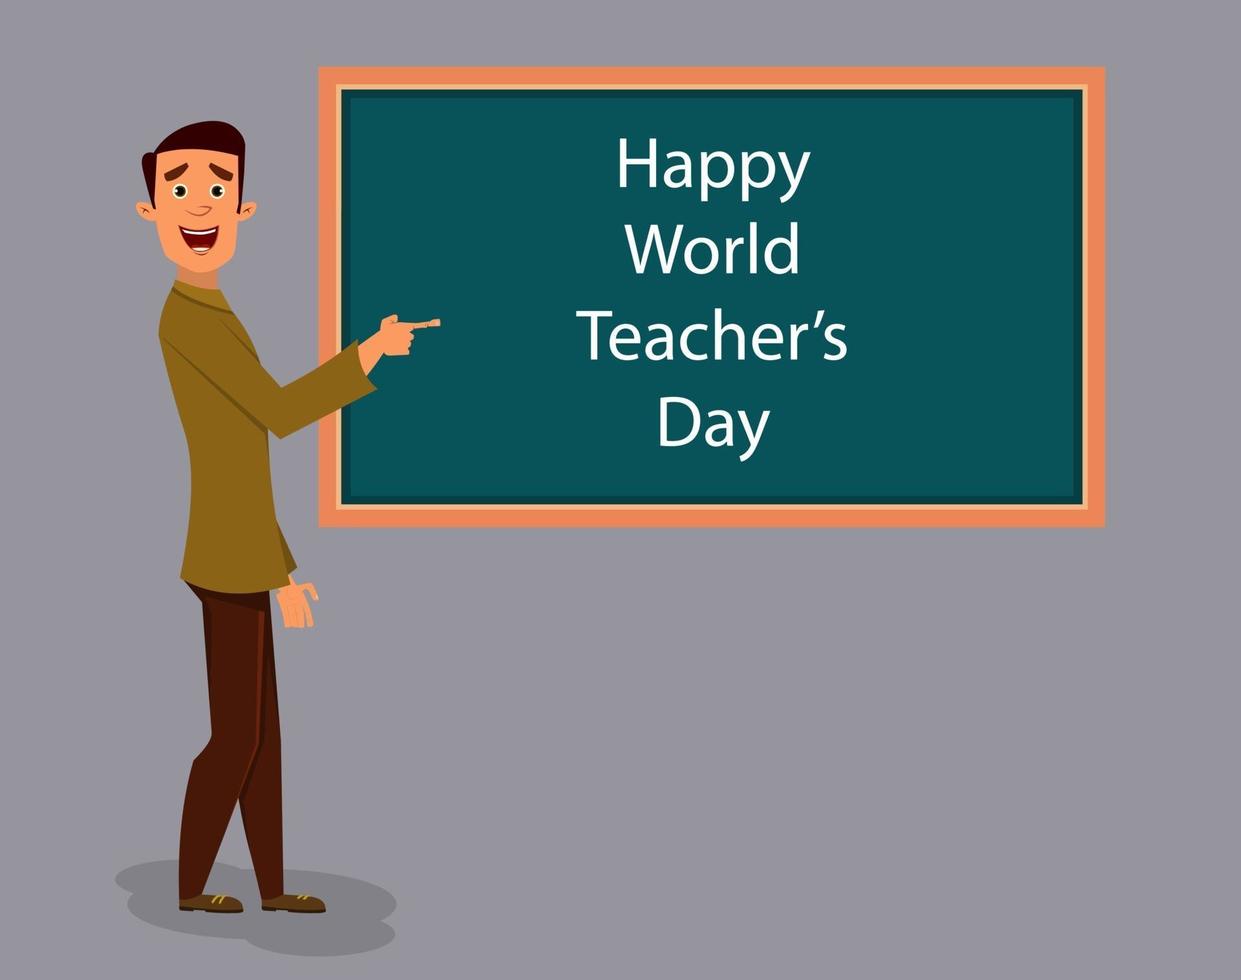 illustrazione della giornata mondiale degli insegnanti vettore